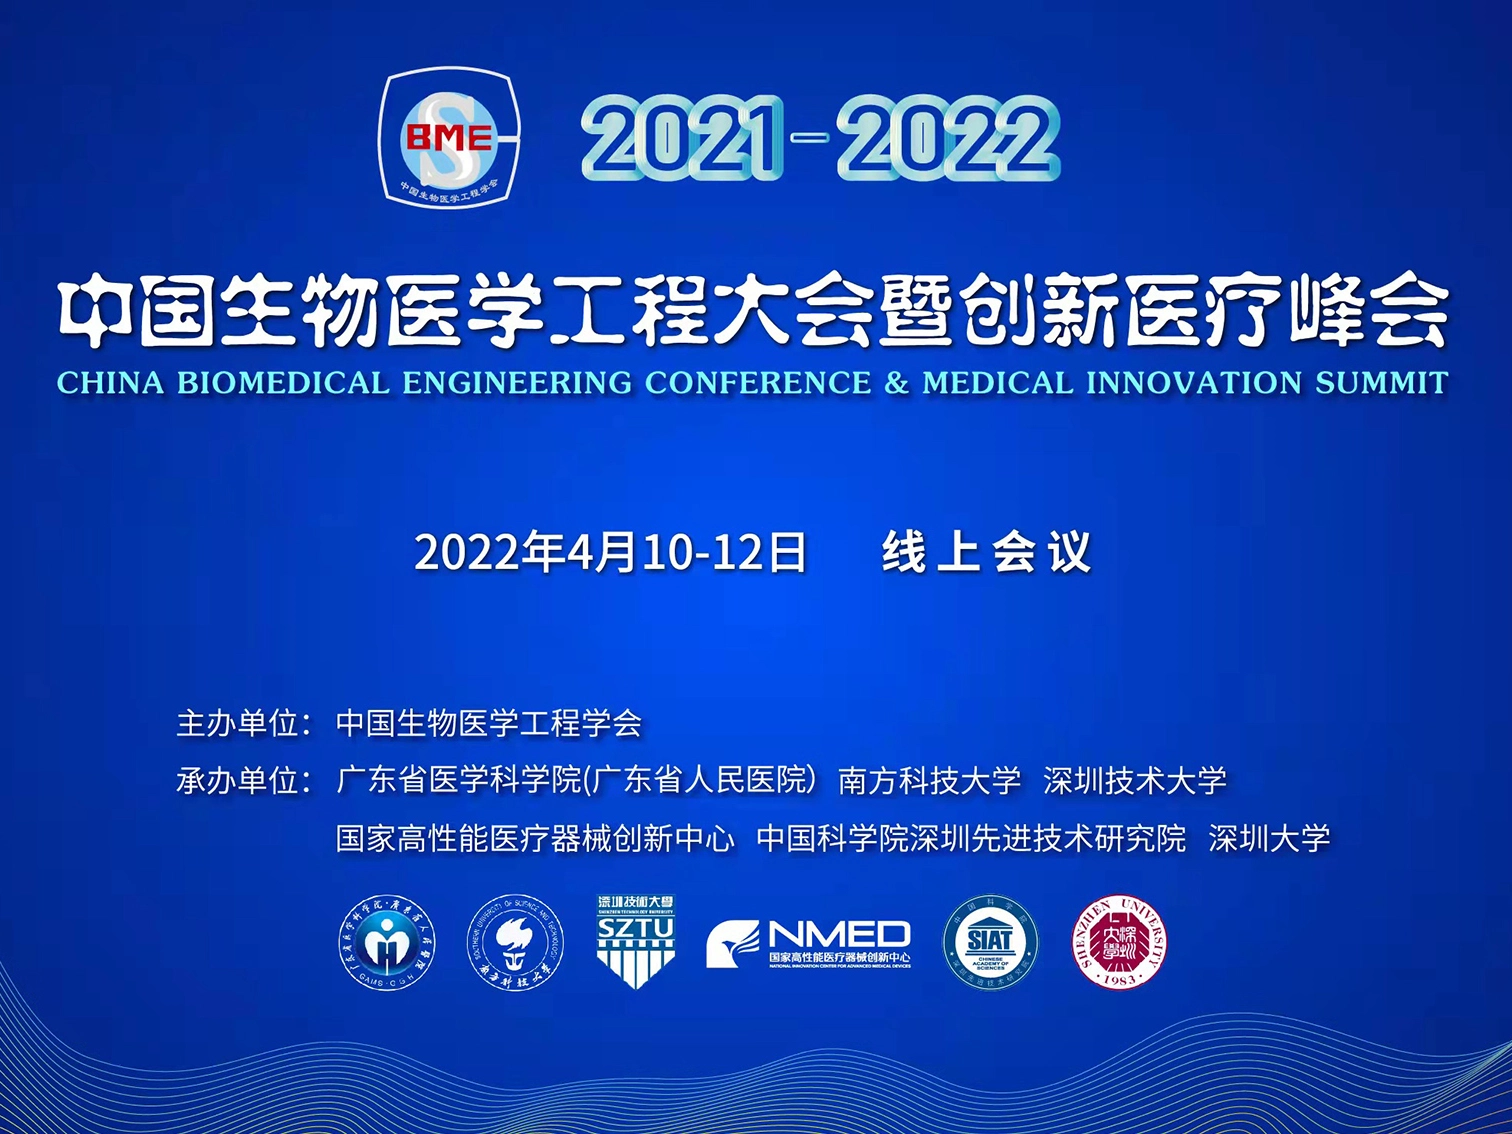 贝丰科技受邀参加2022中国生物医学工程大会，助力科技成果转化并做专题演讲